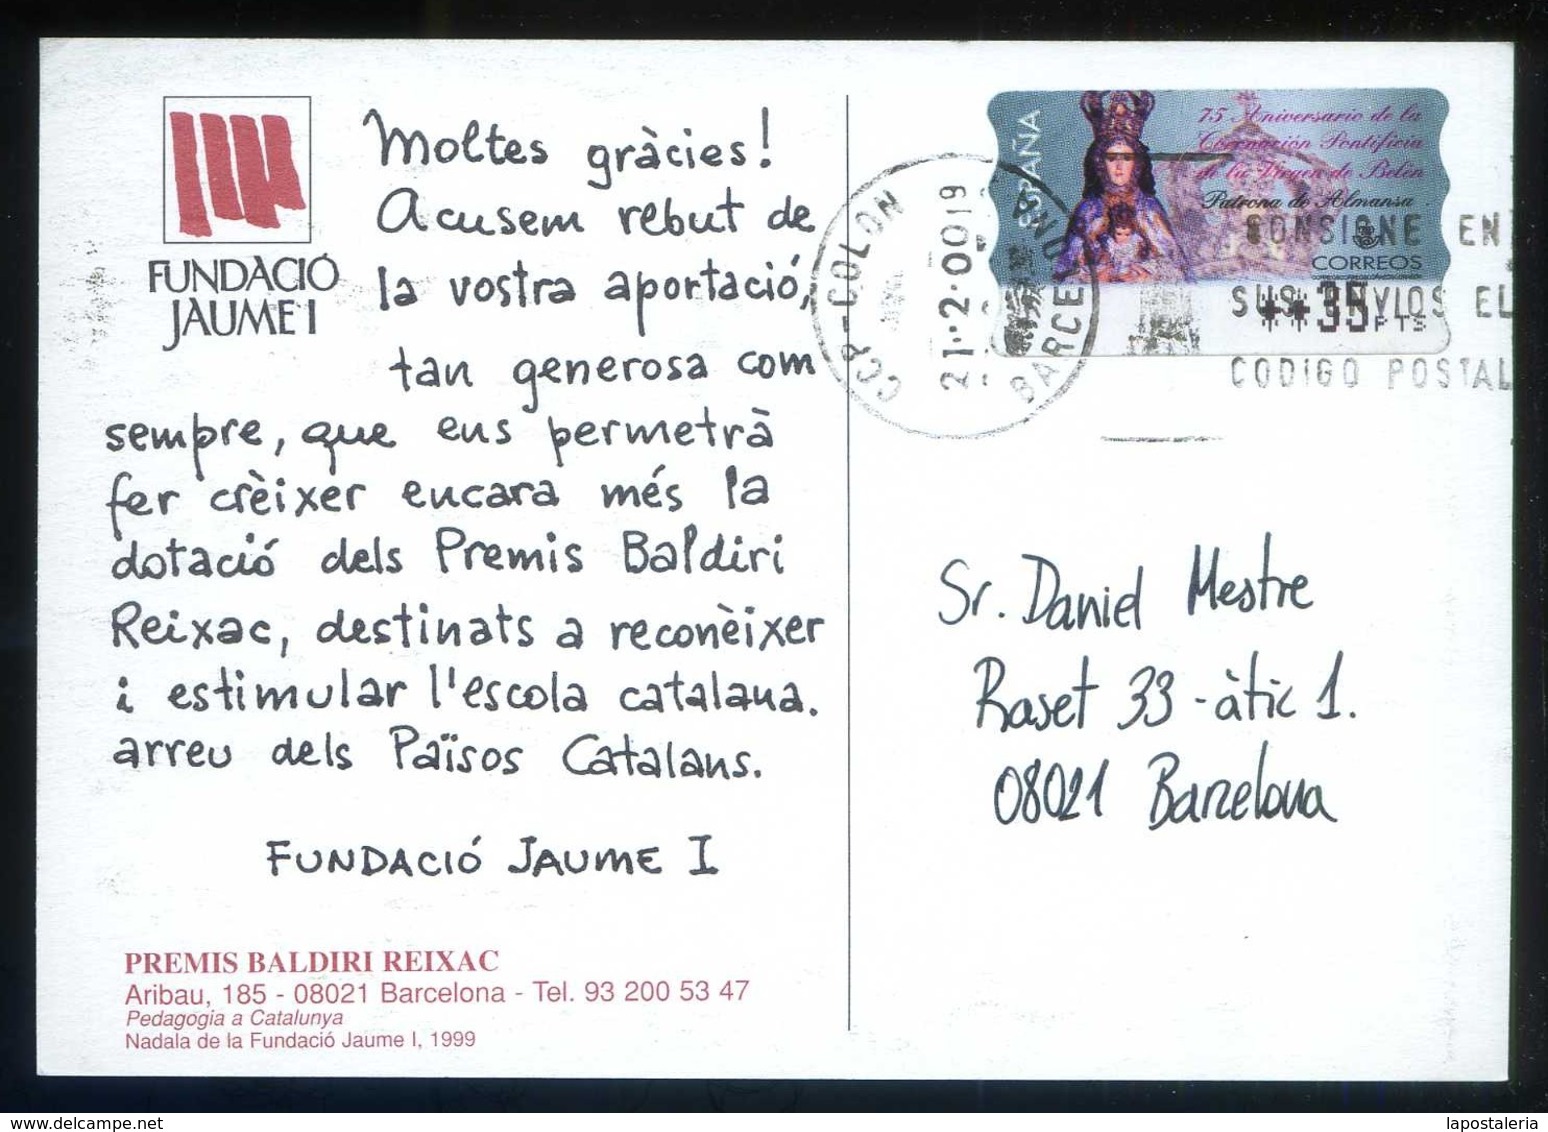 Barcelona *Fundació Jaume I - Premis Baldiri Rexach* Lote 19+1 diferentes. Circuladas varios años.